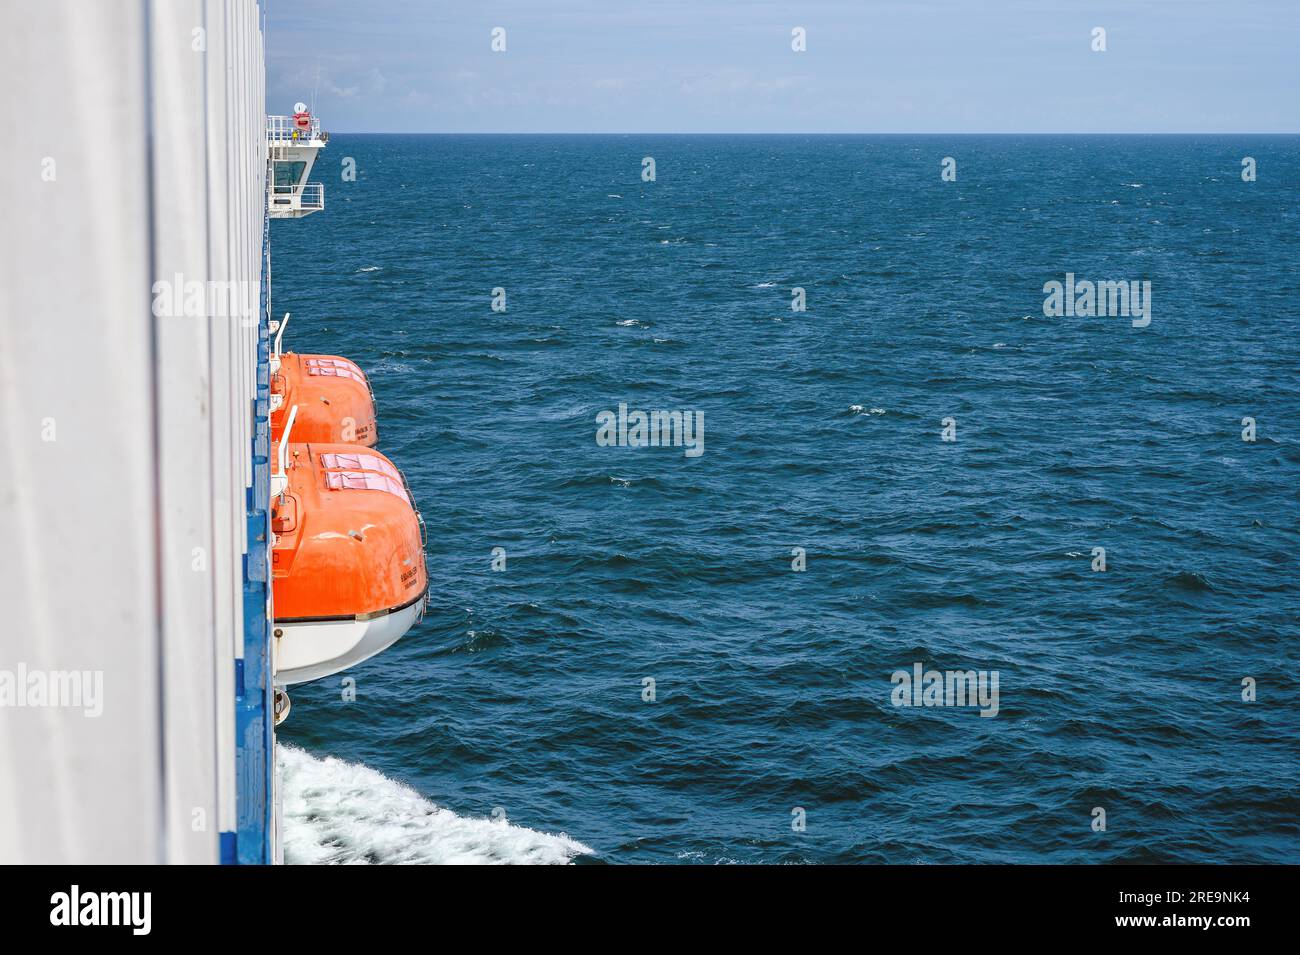 Una vista sul mare a bordo del traghetto Galicia che attraversa la Manica, mostrando le scialuppe di salvataggio e il ponte. Foto Stock